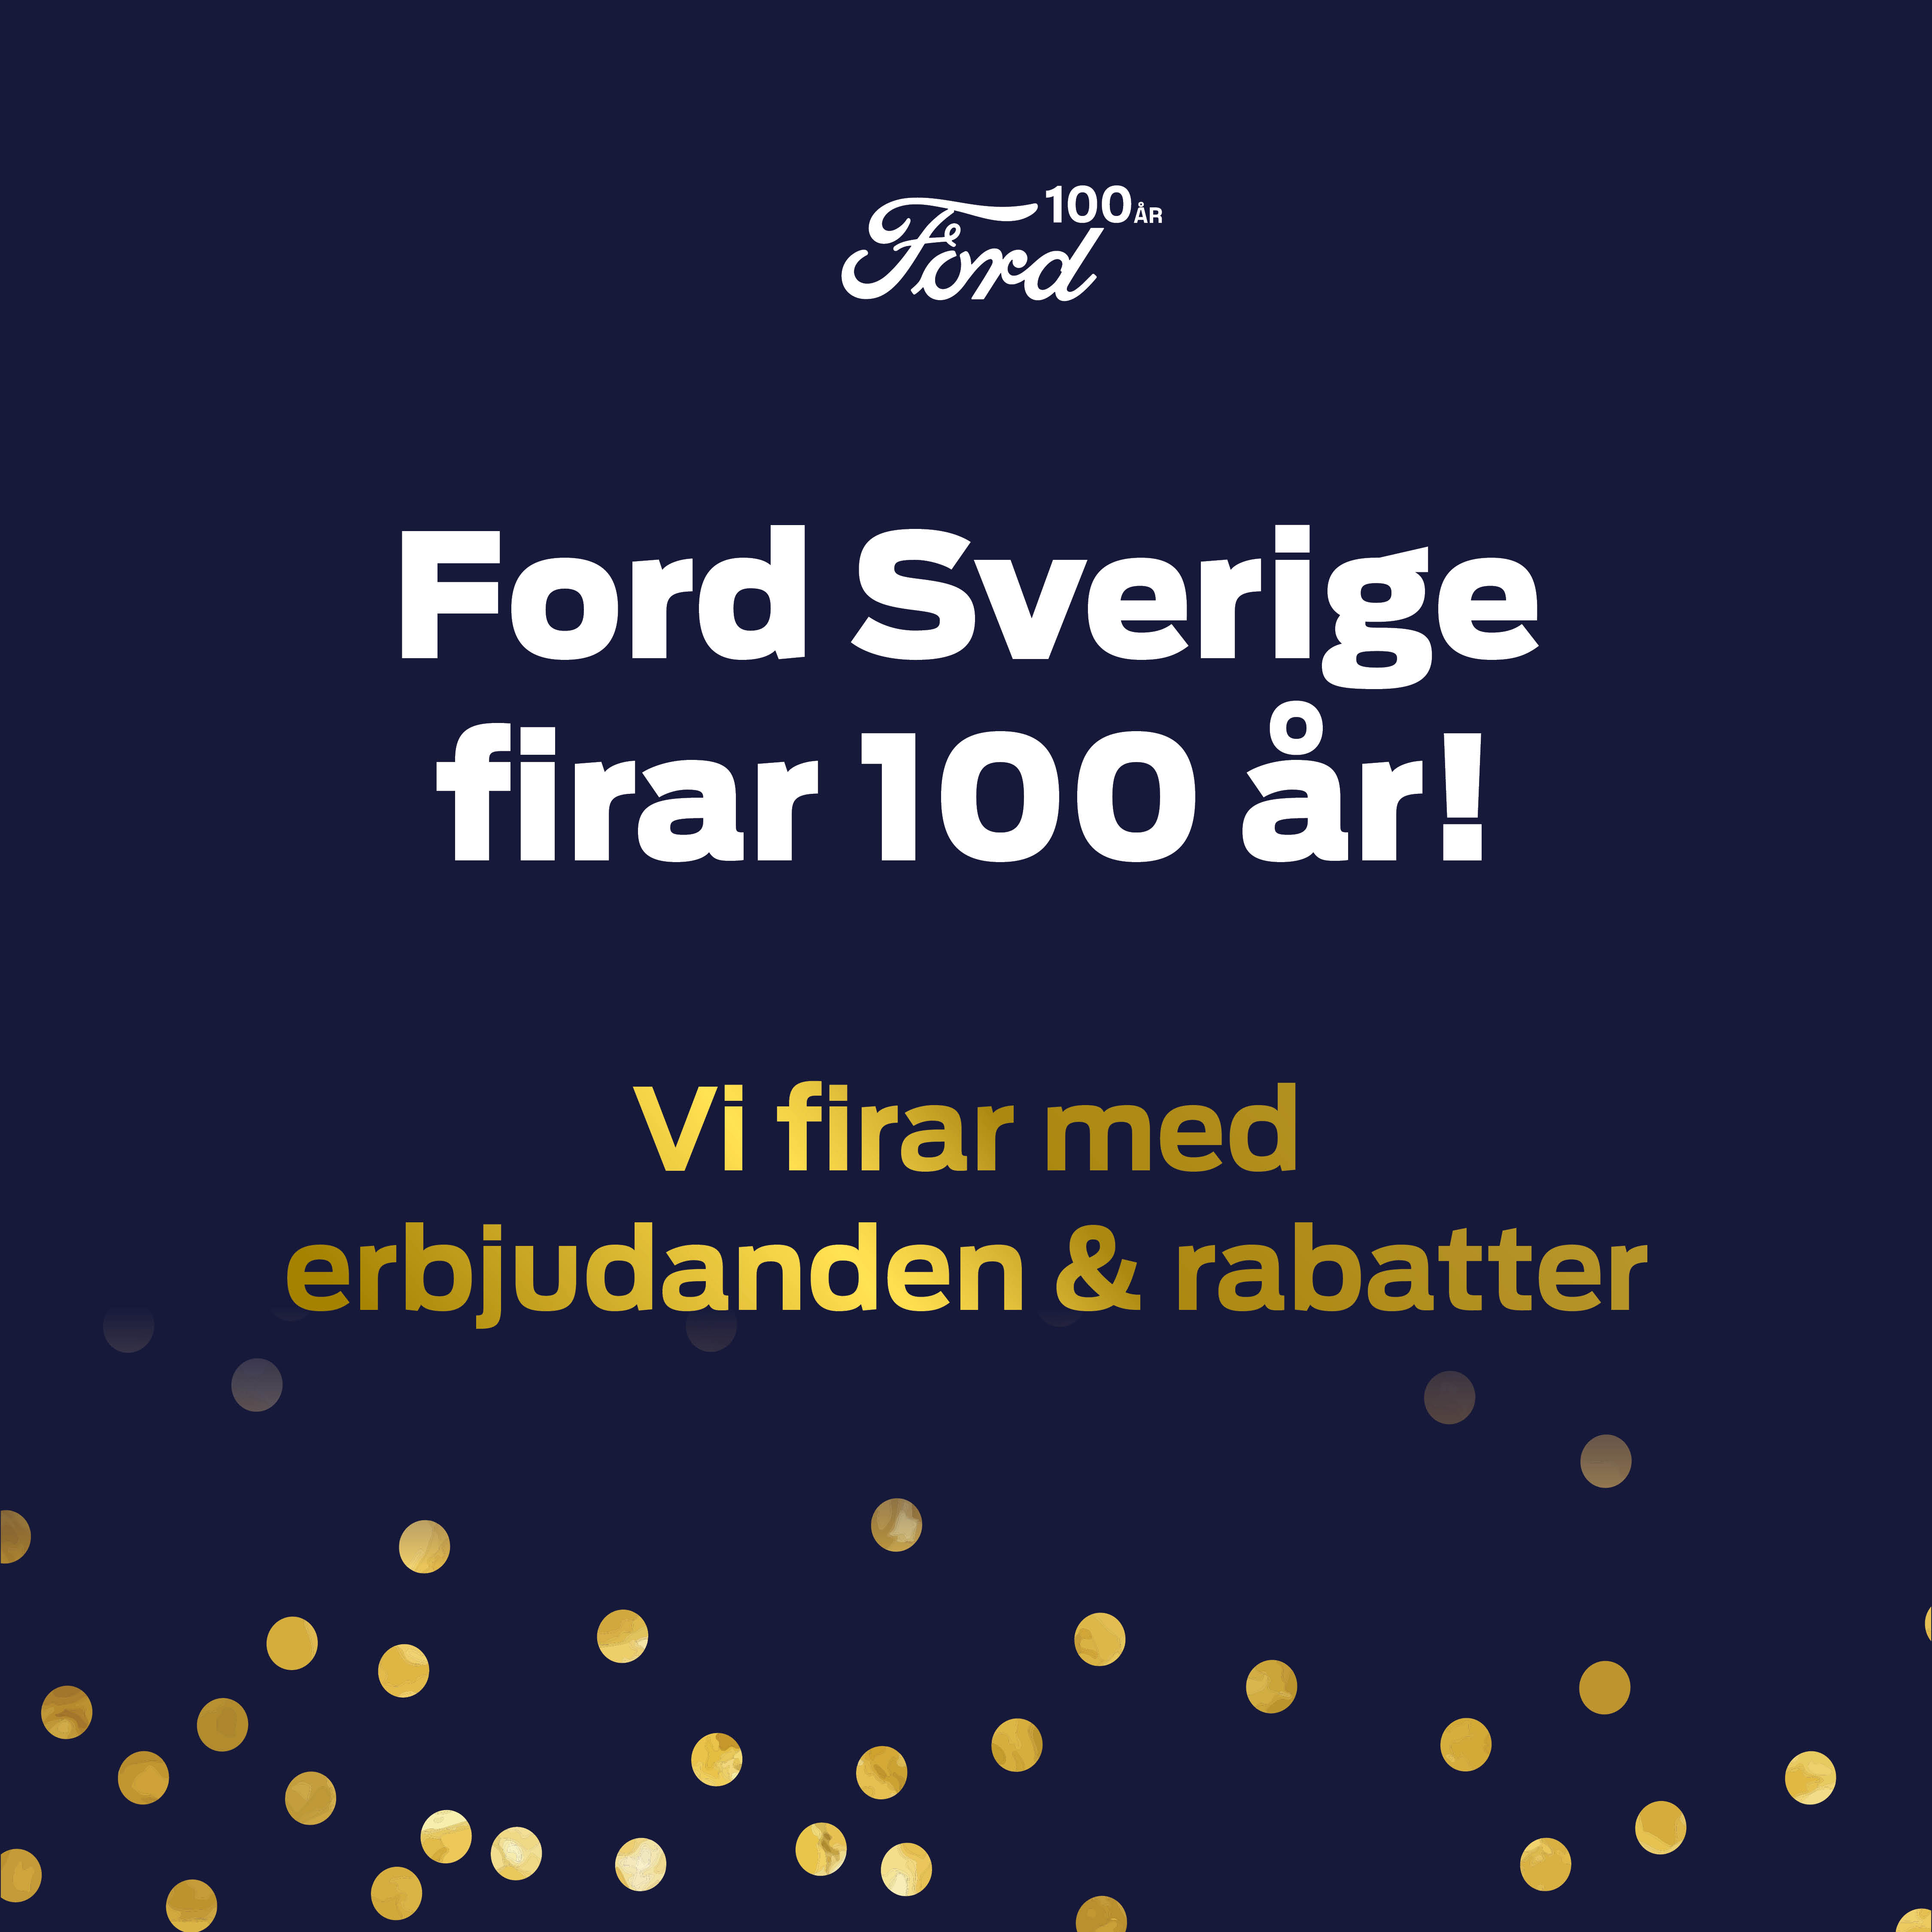 FORD SVERIGE FIRAR 100 år!